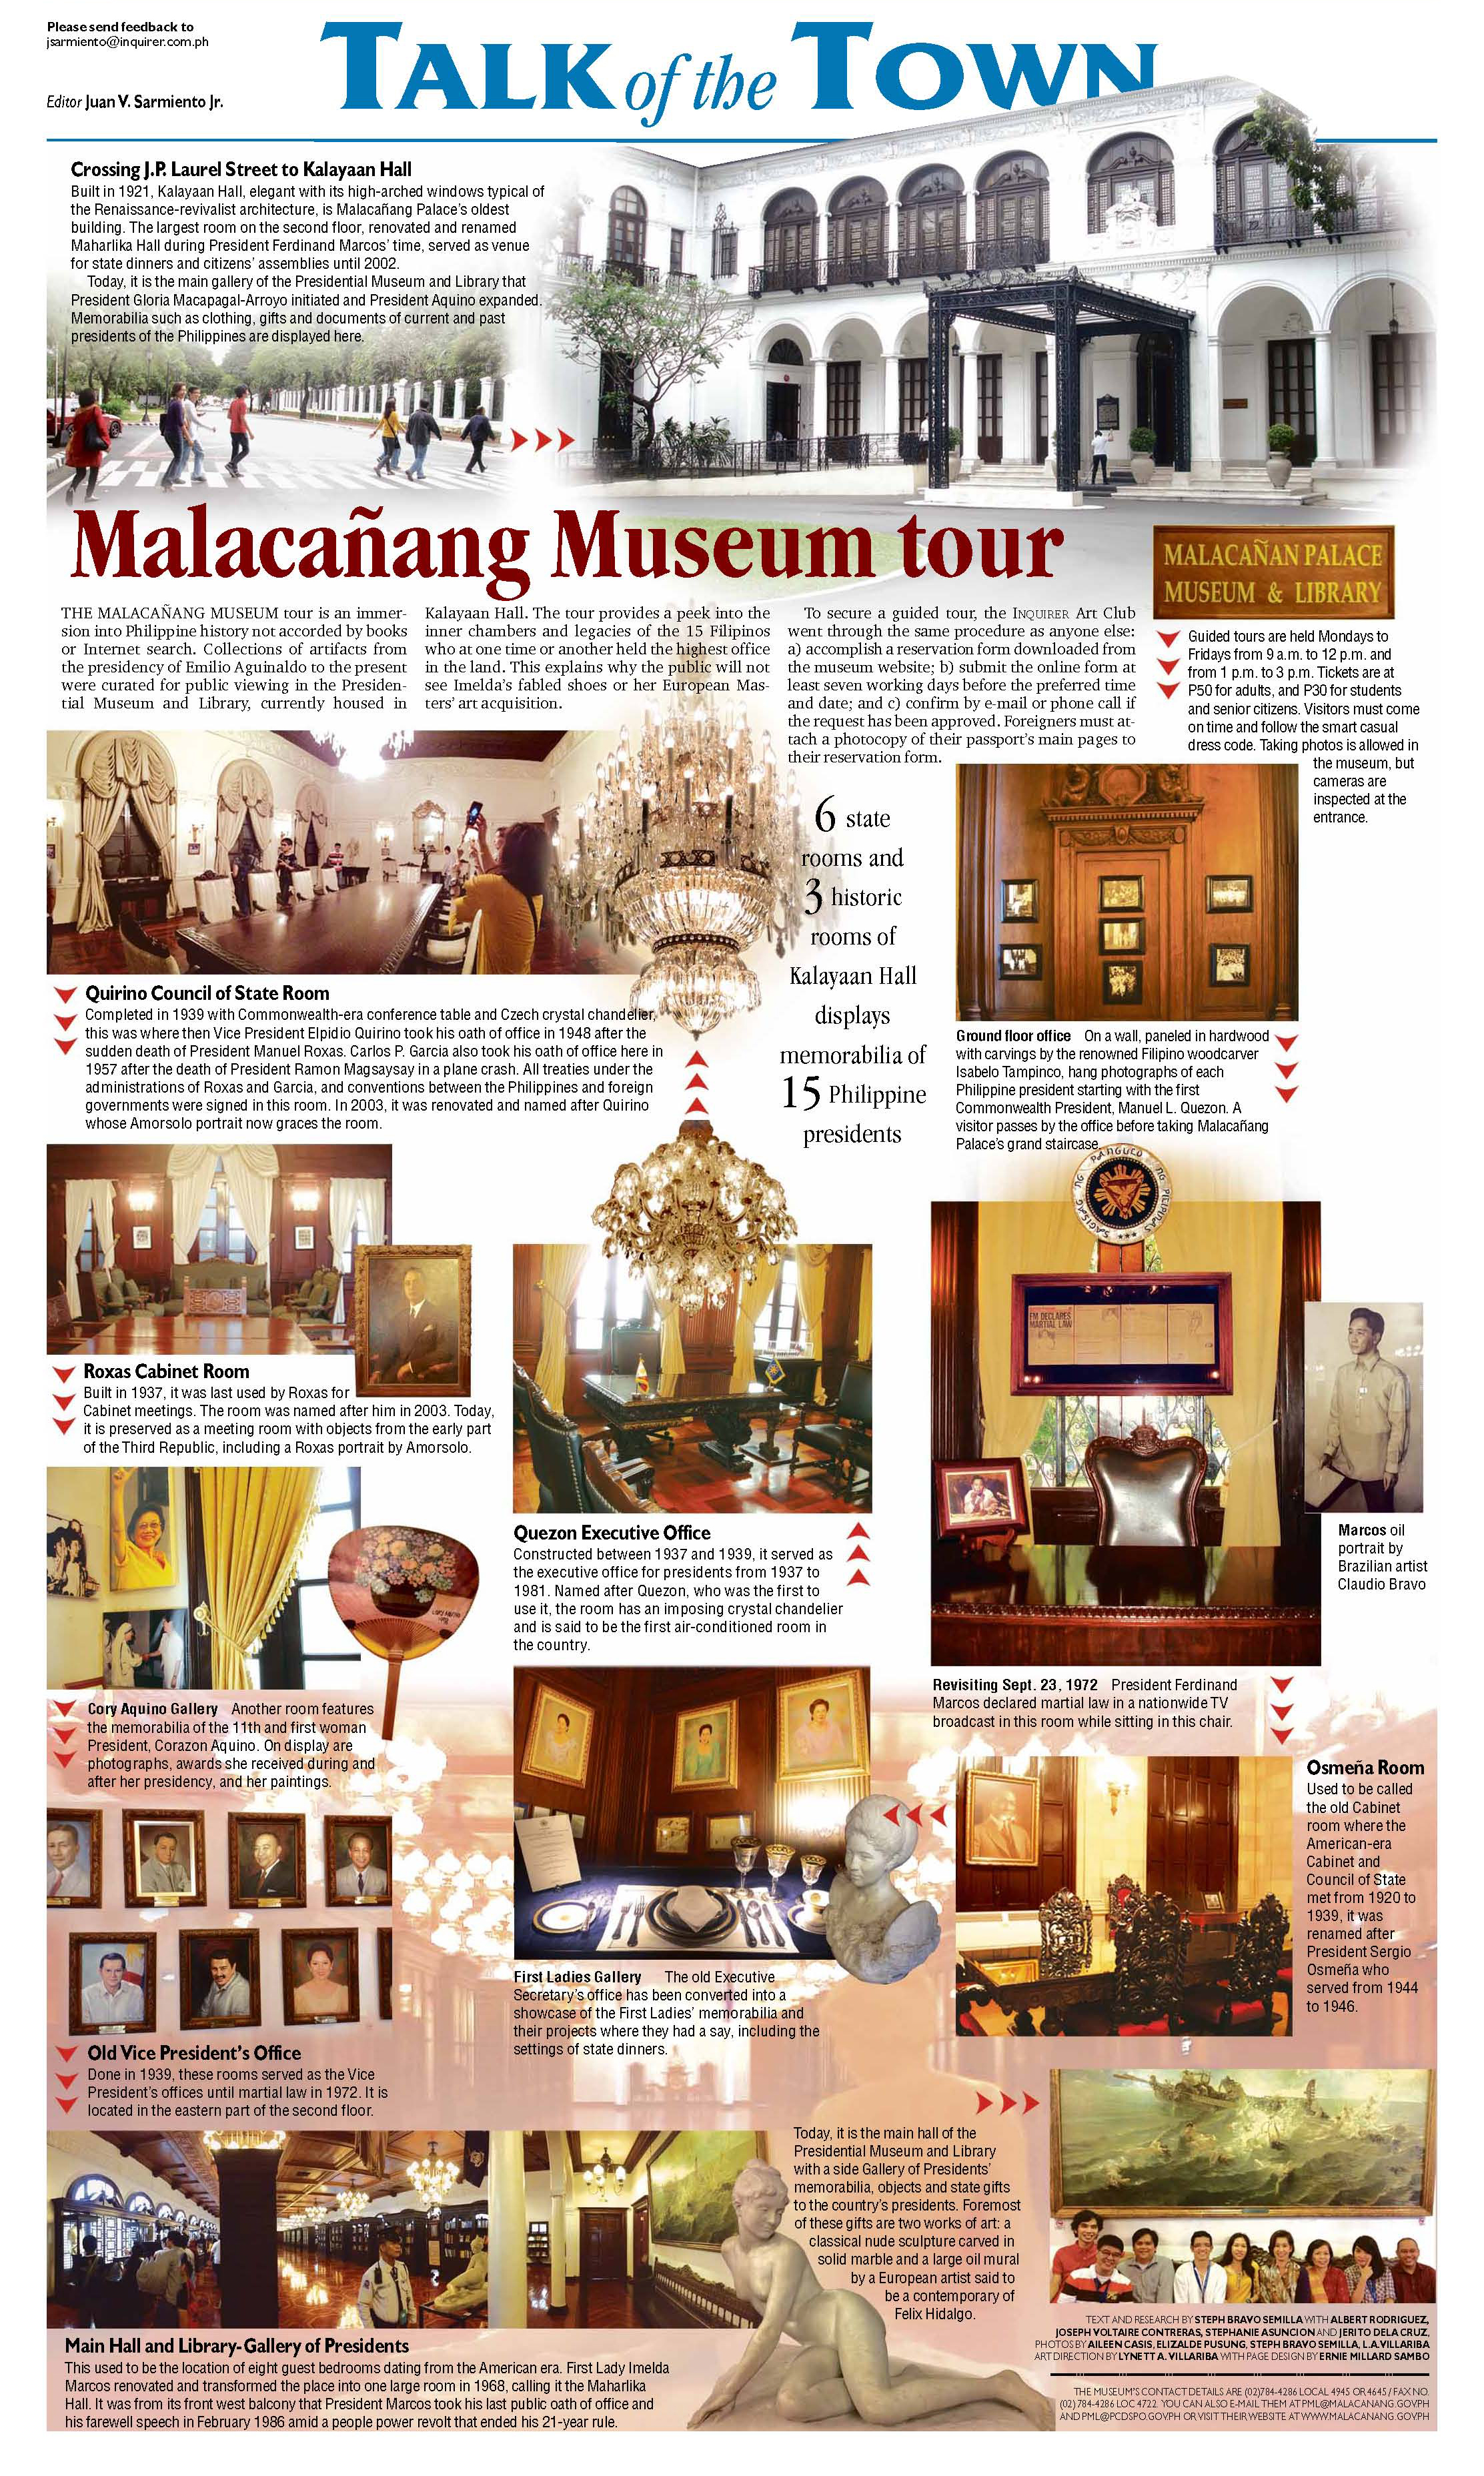 malacanang palace museum tour